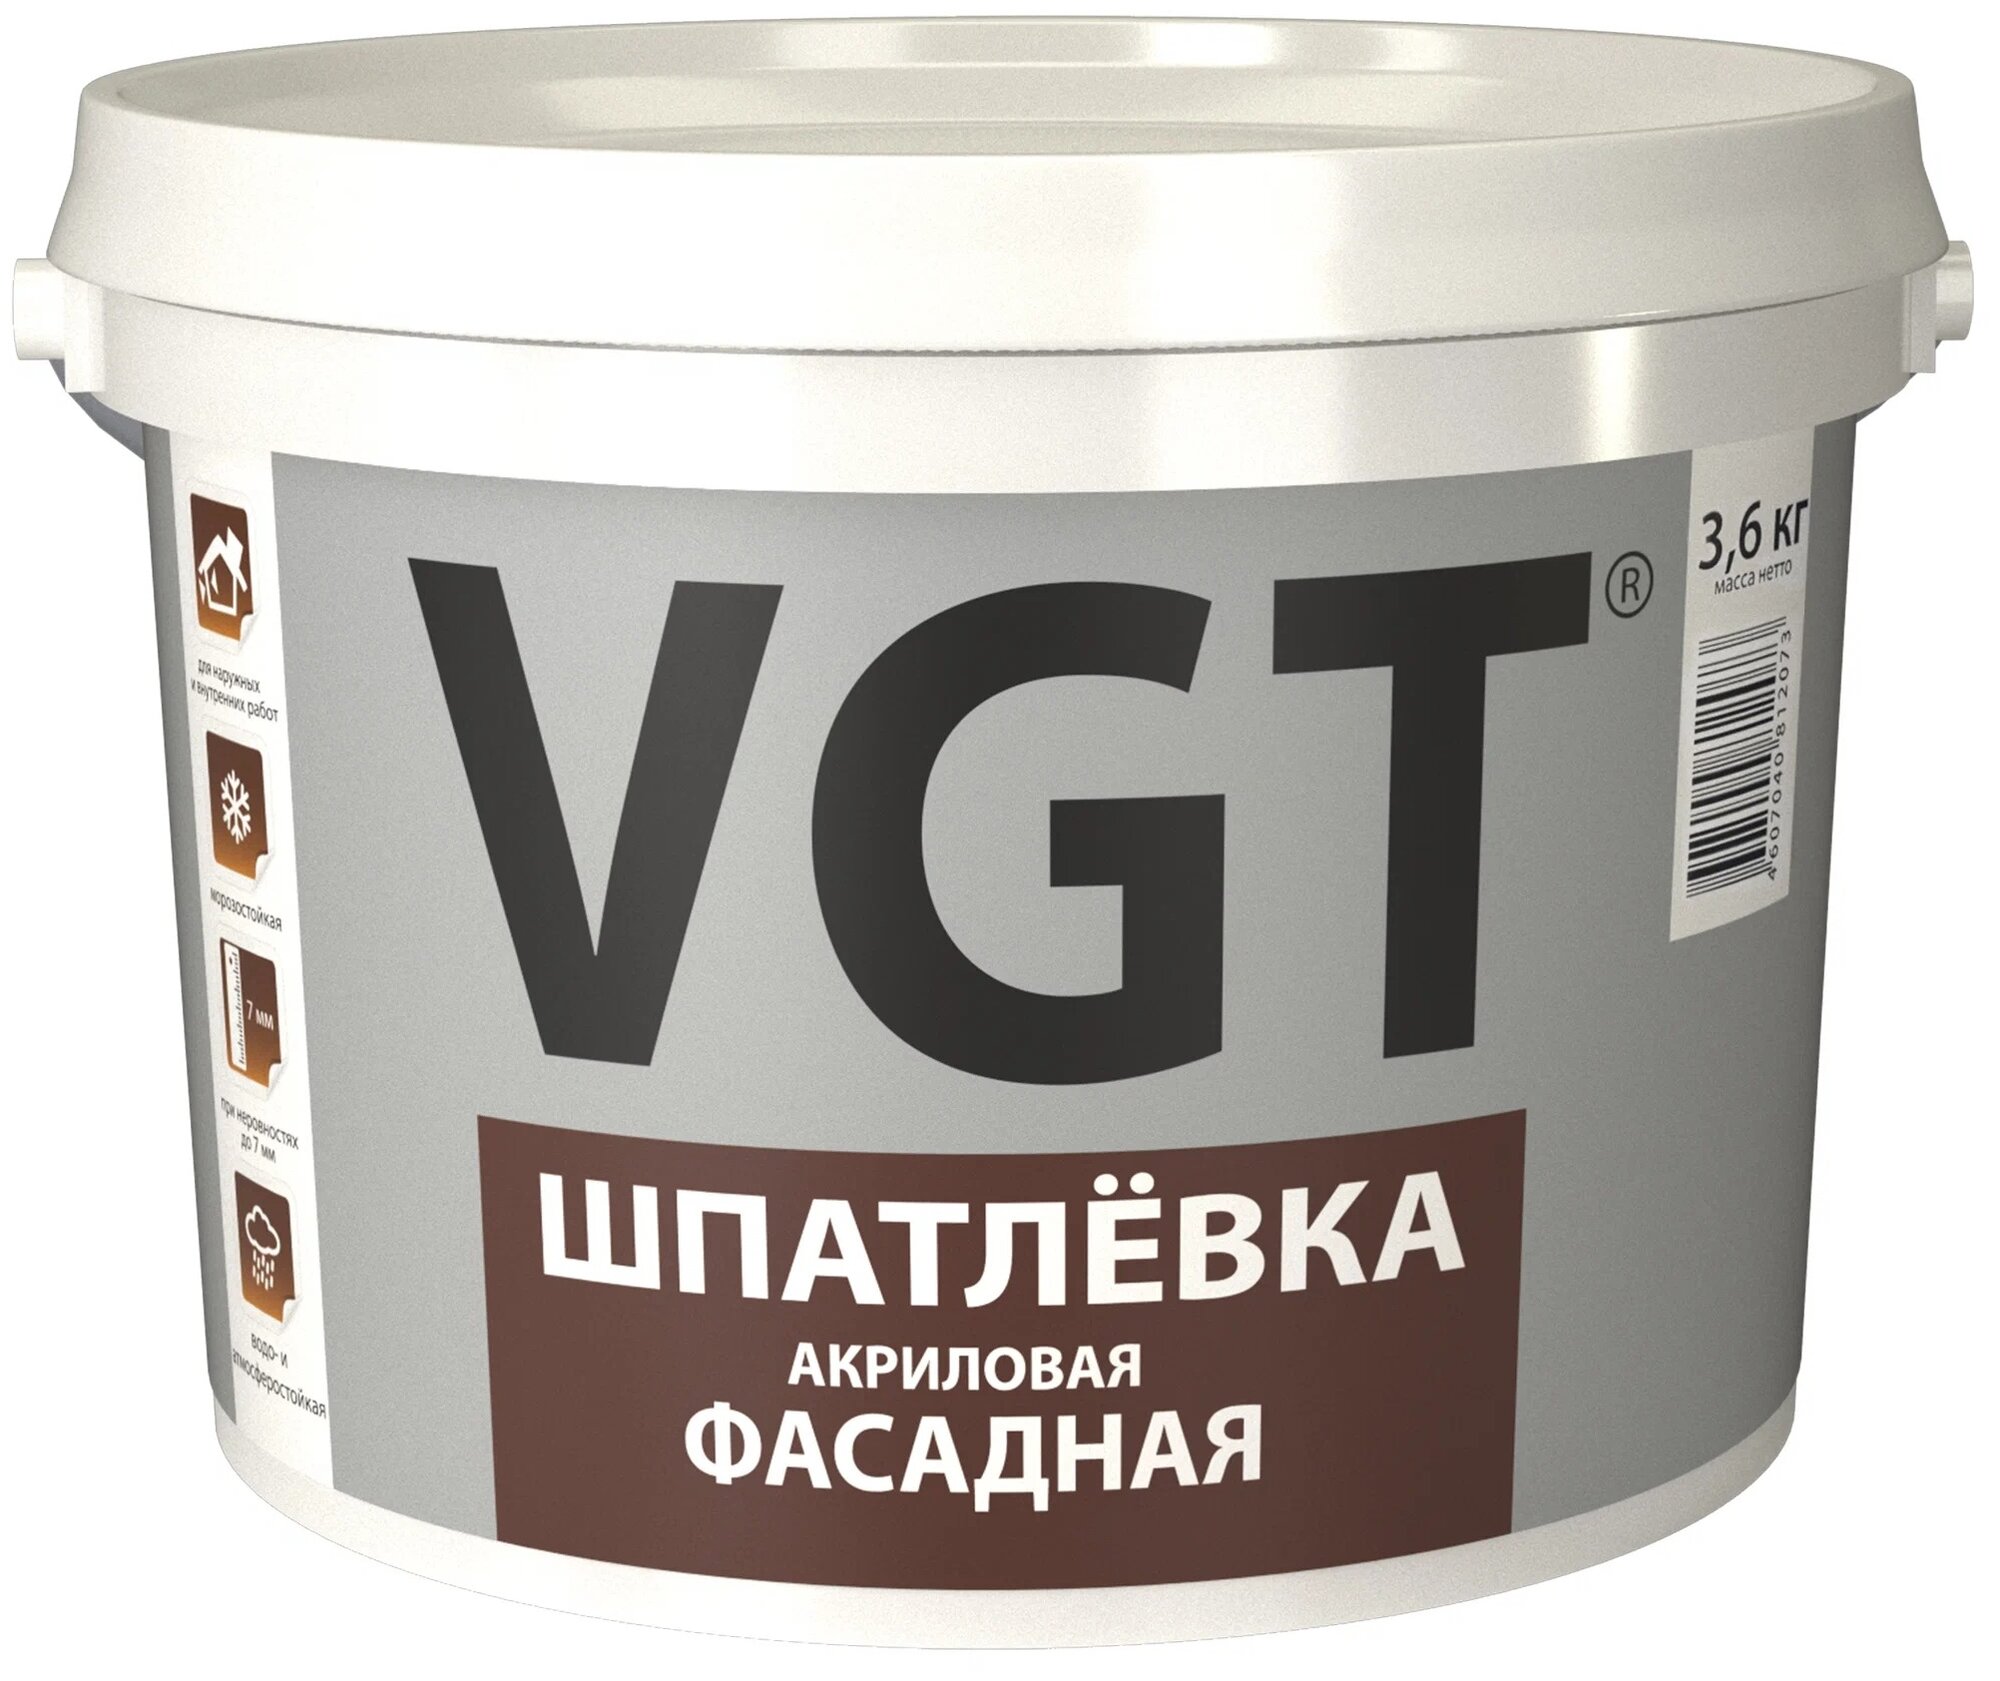 Шпатлевка VGT акриловая фасадная, белый, 3.6 кг